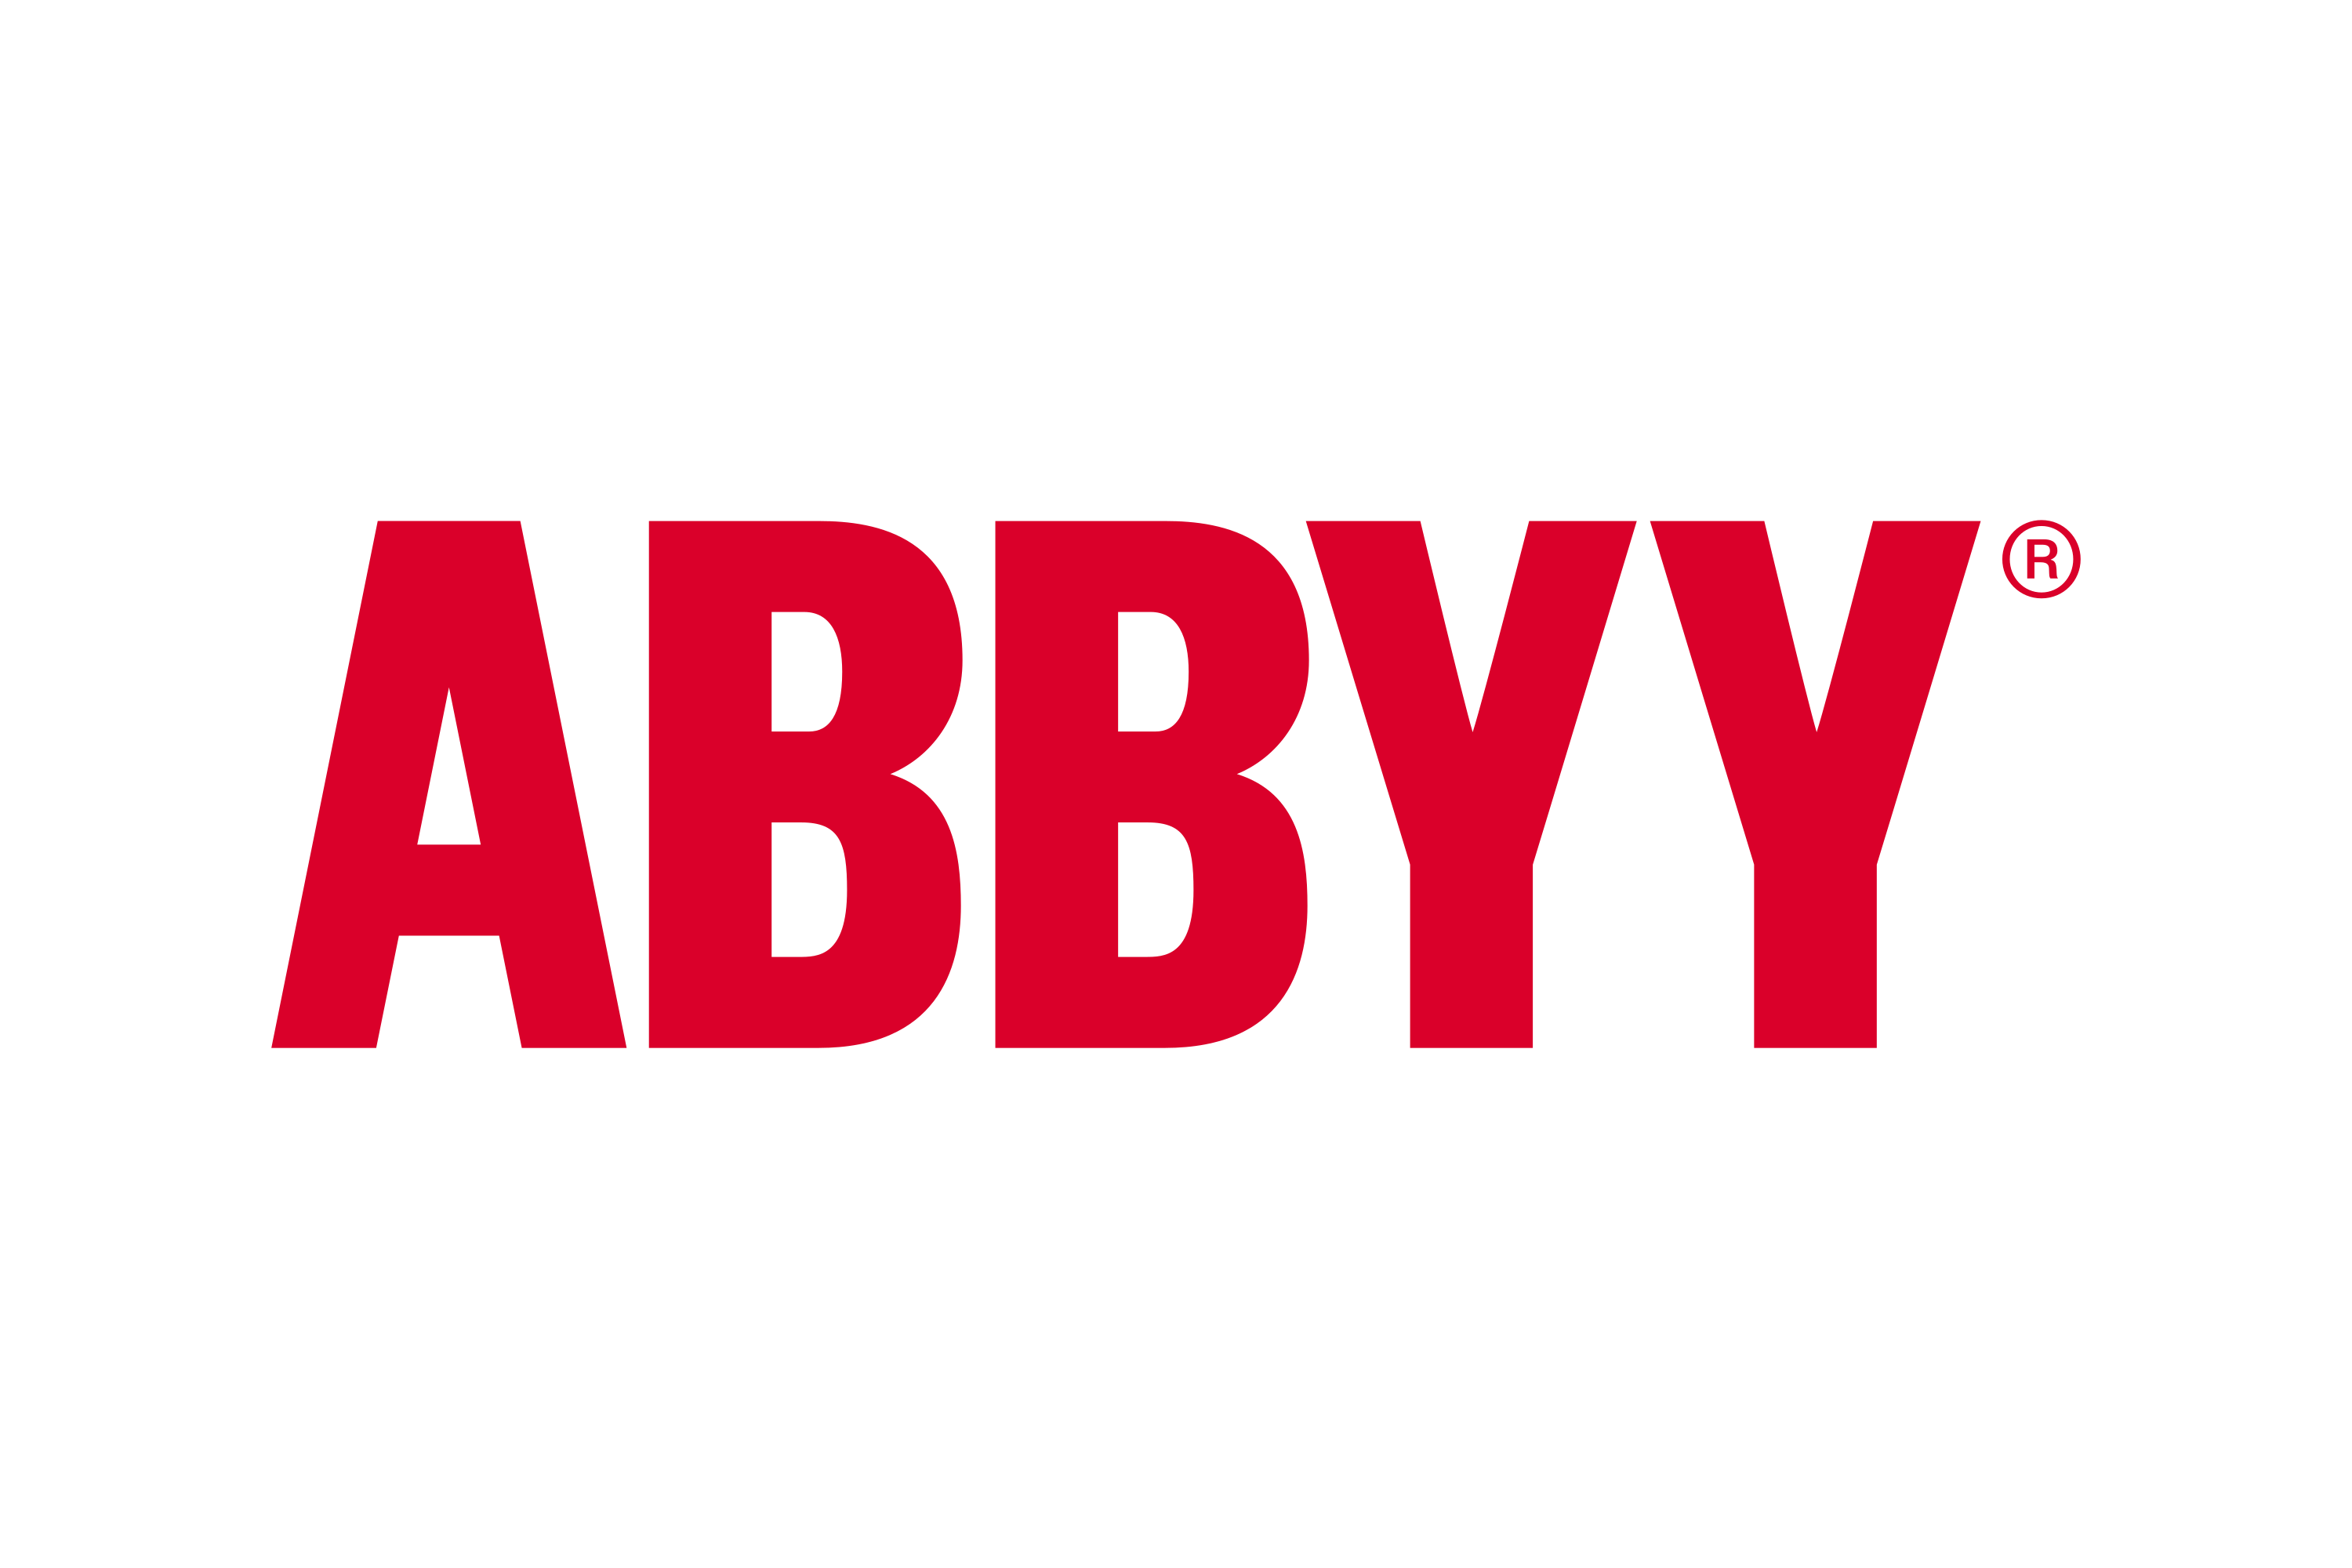 Российская компания ABBYY продолжает работать в Украине, несмотря на запрет и войну, - СМИ